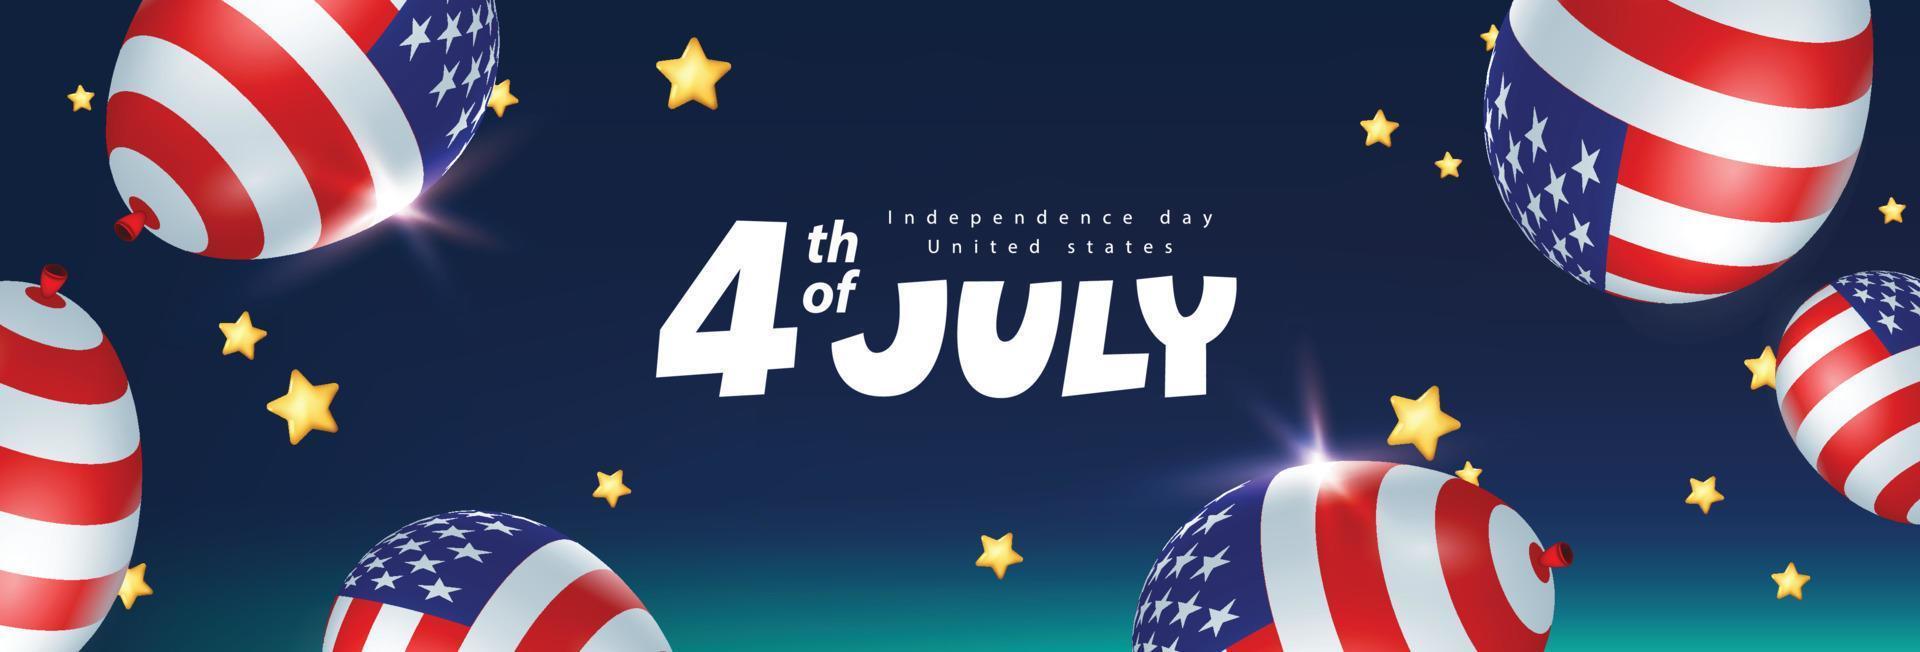 banner de celebração dos eua do dia da independência no céu noturno com balões americanos e estrelas douradas vetor